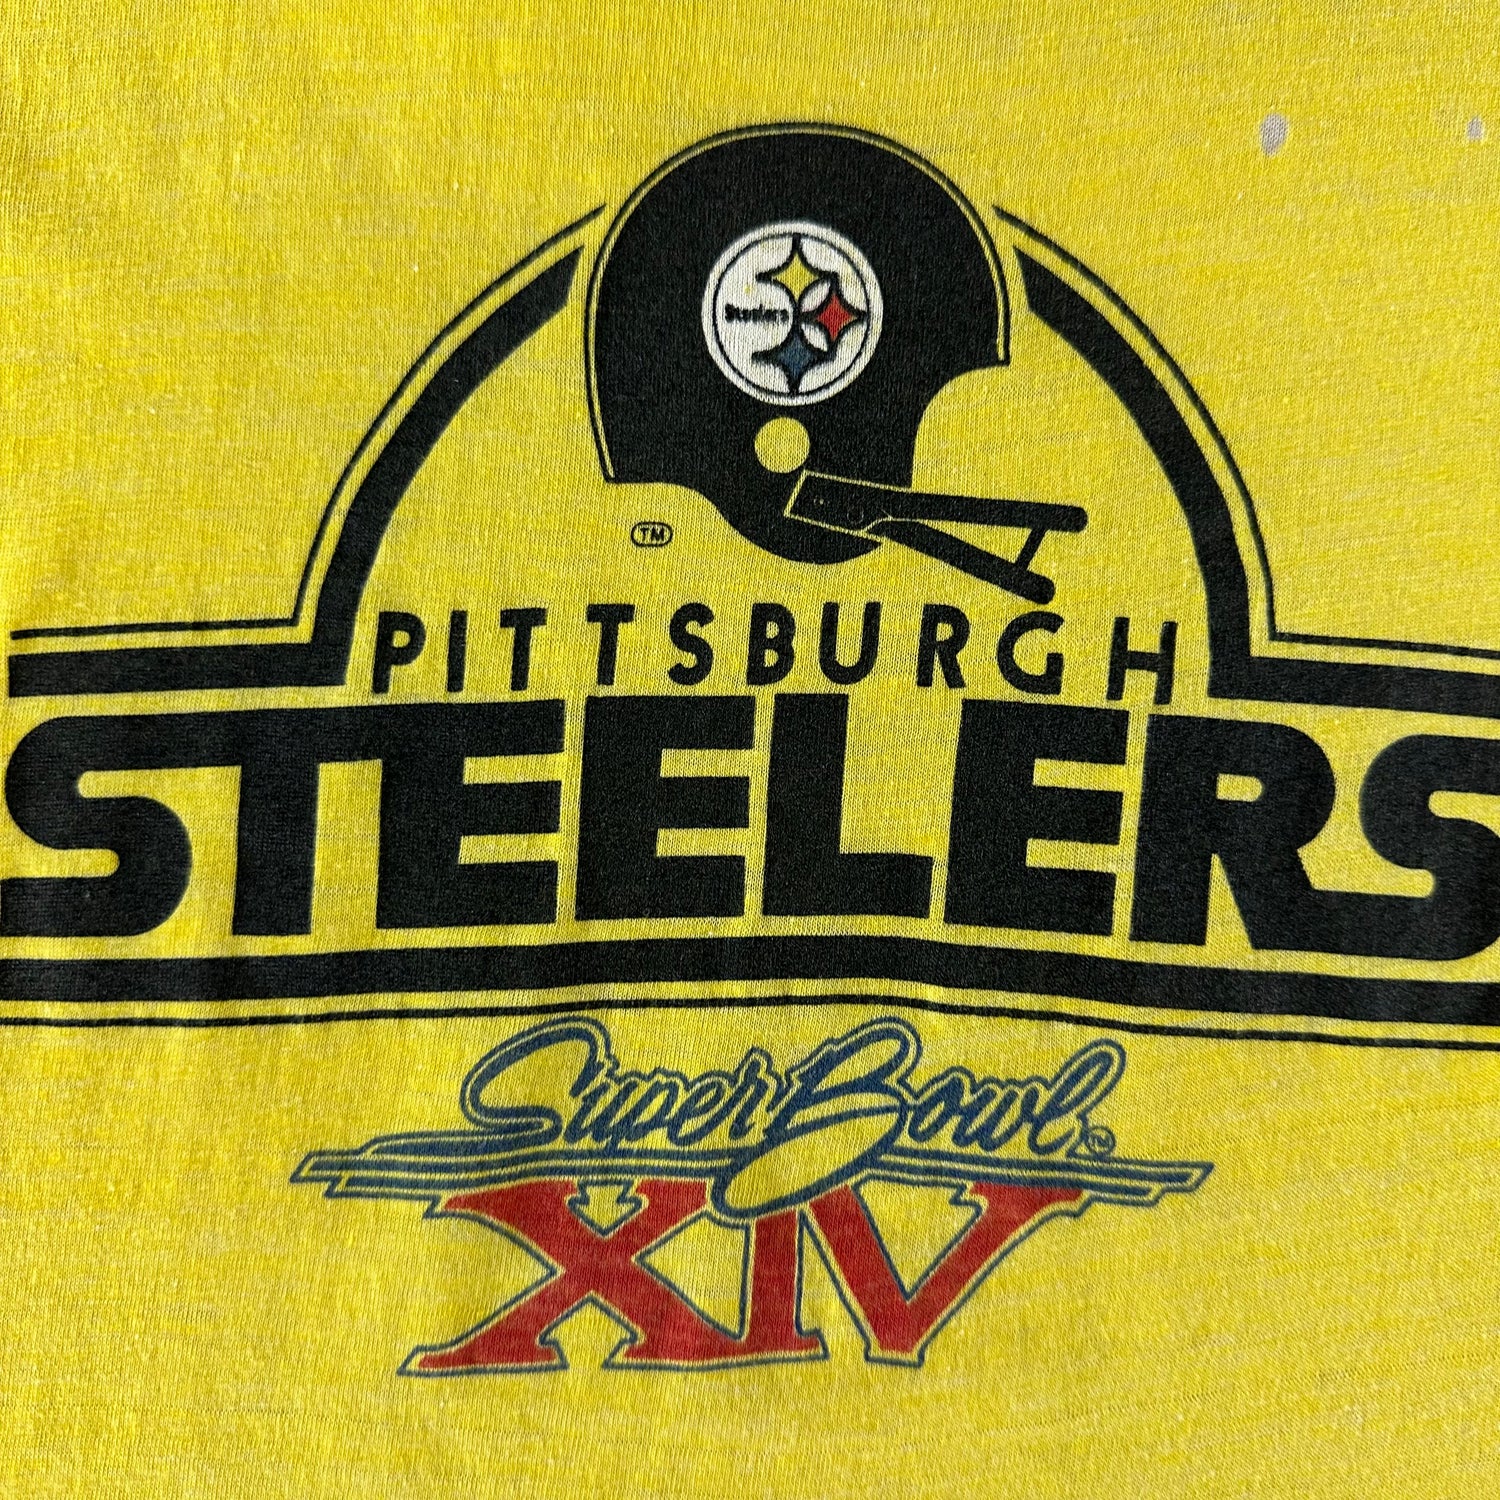 Vintage 1980s Steelers Super Bowls T-shirt size XL